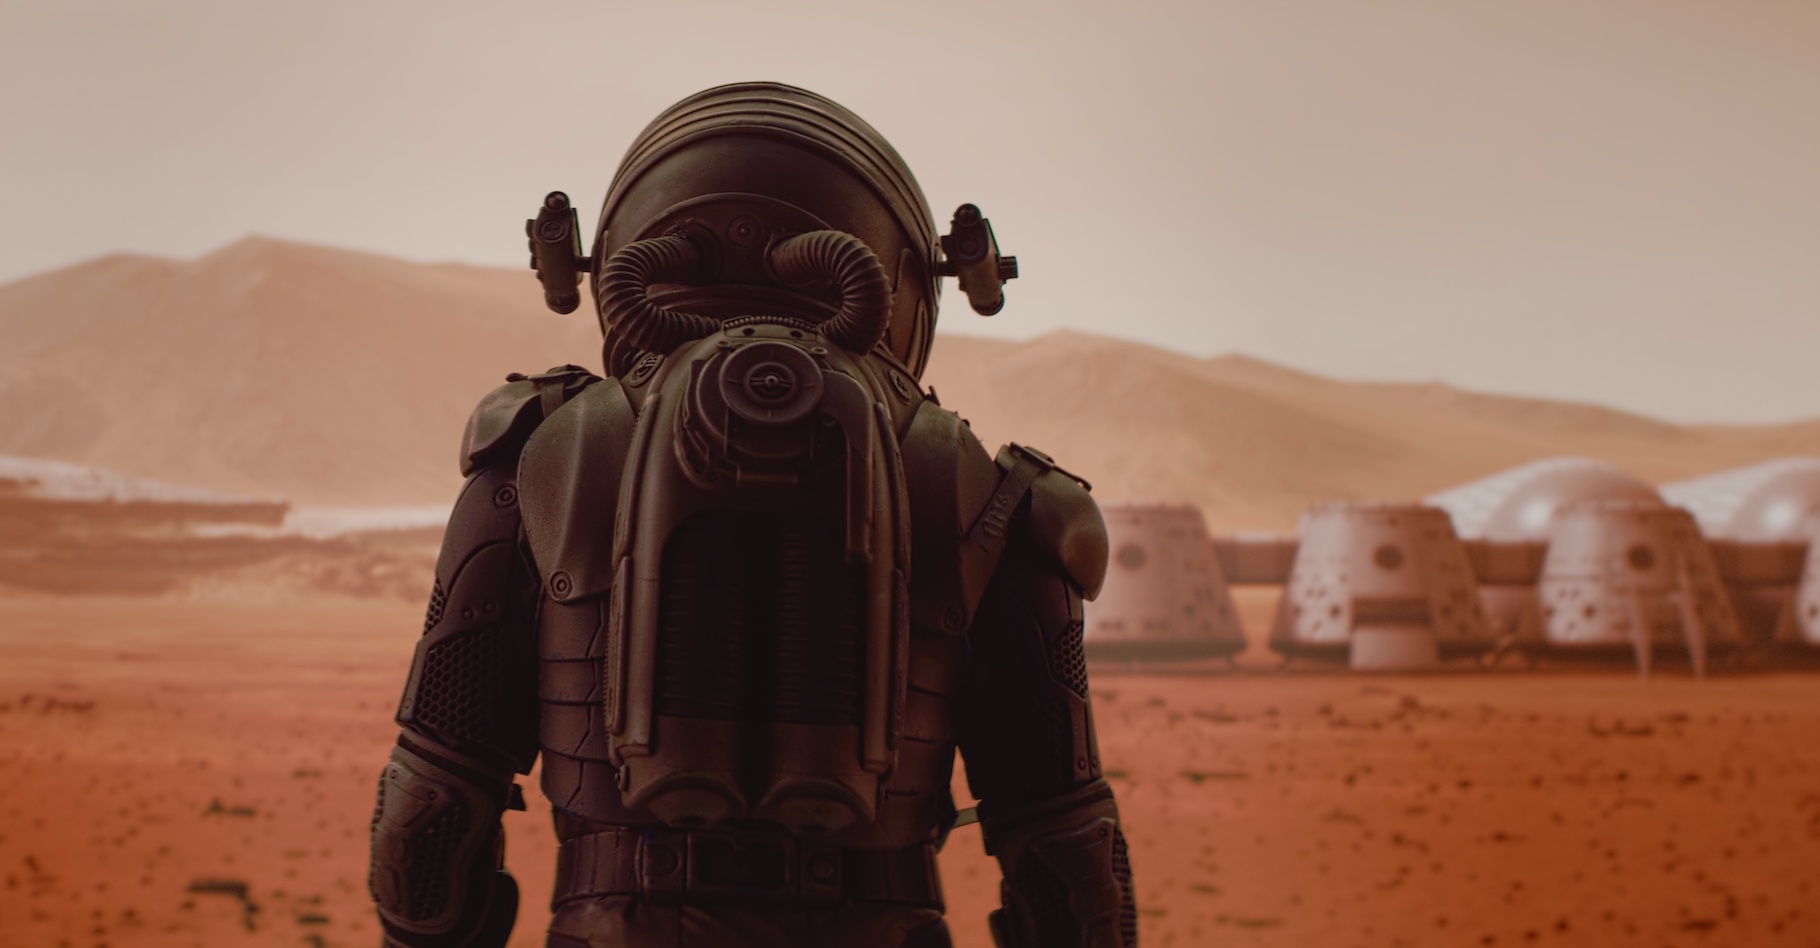 Des chercheurs de l’université de Manchester (Royaume-Uni) proposent une solution pour fabriquer des matériaux de construction sur Mars : utiliser le sang des astronautes. © daniilvolkov, Adobe Stock